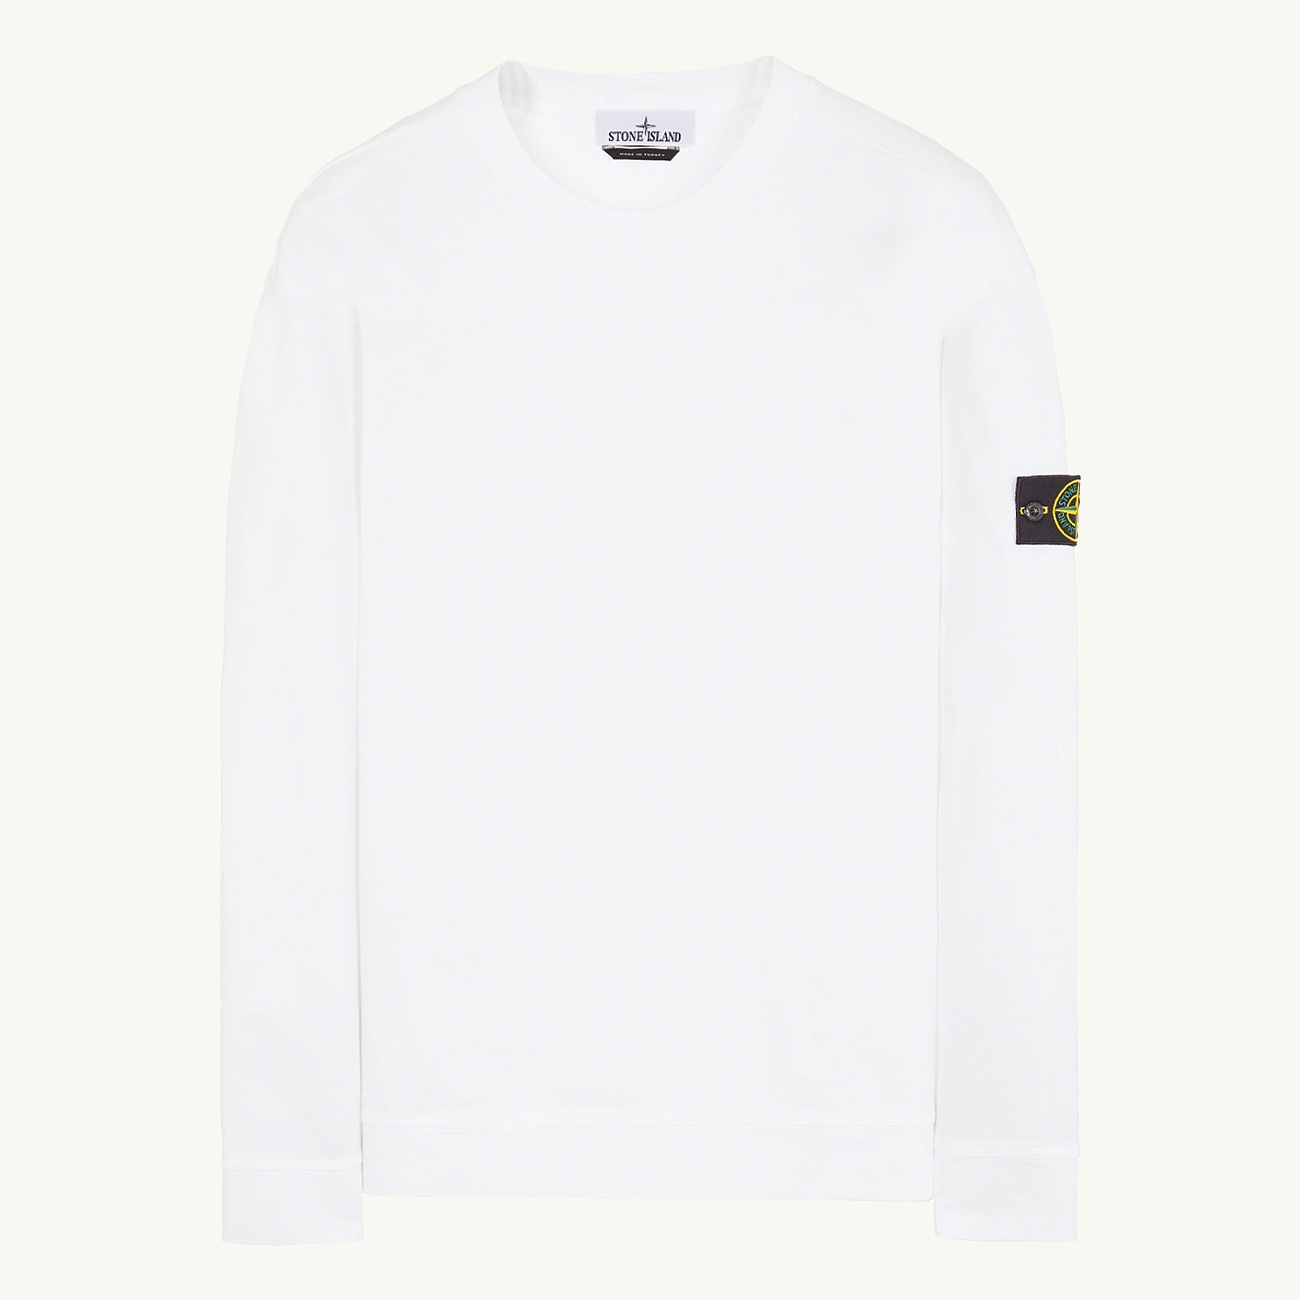 Sweatshirt Patch Crew Lightweight Cotton - White 0180